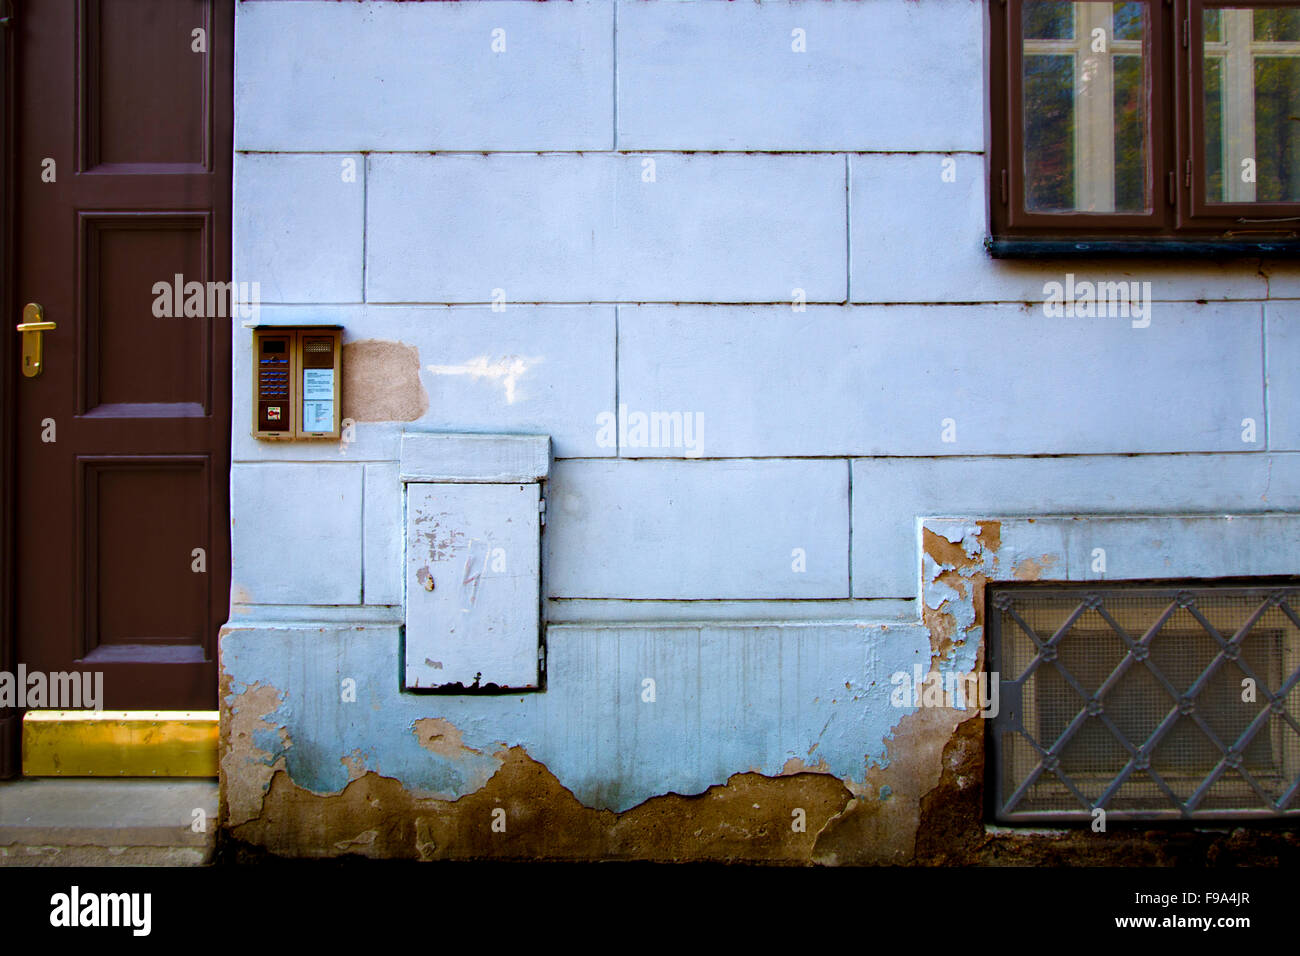 Bâtiment en brique bleu avec porte, fenêtre et sous-sol Banque D'Images